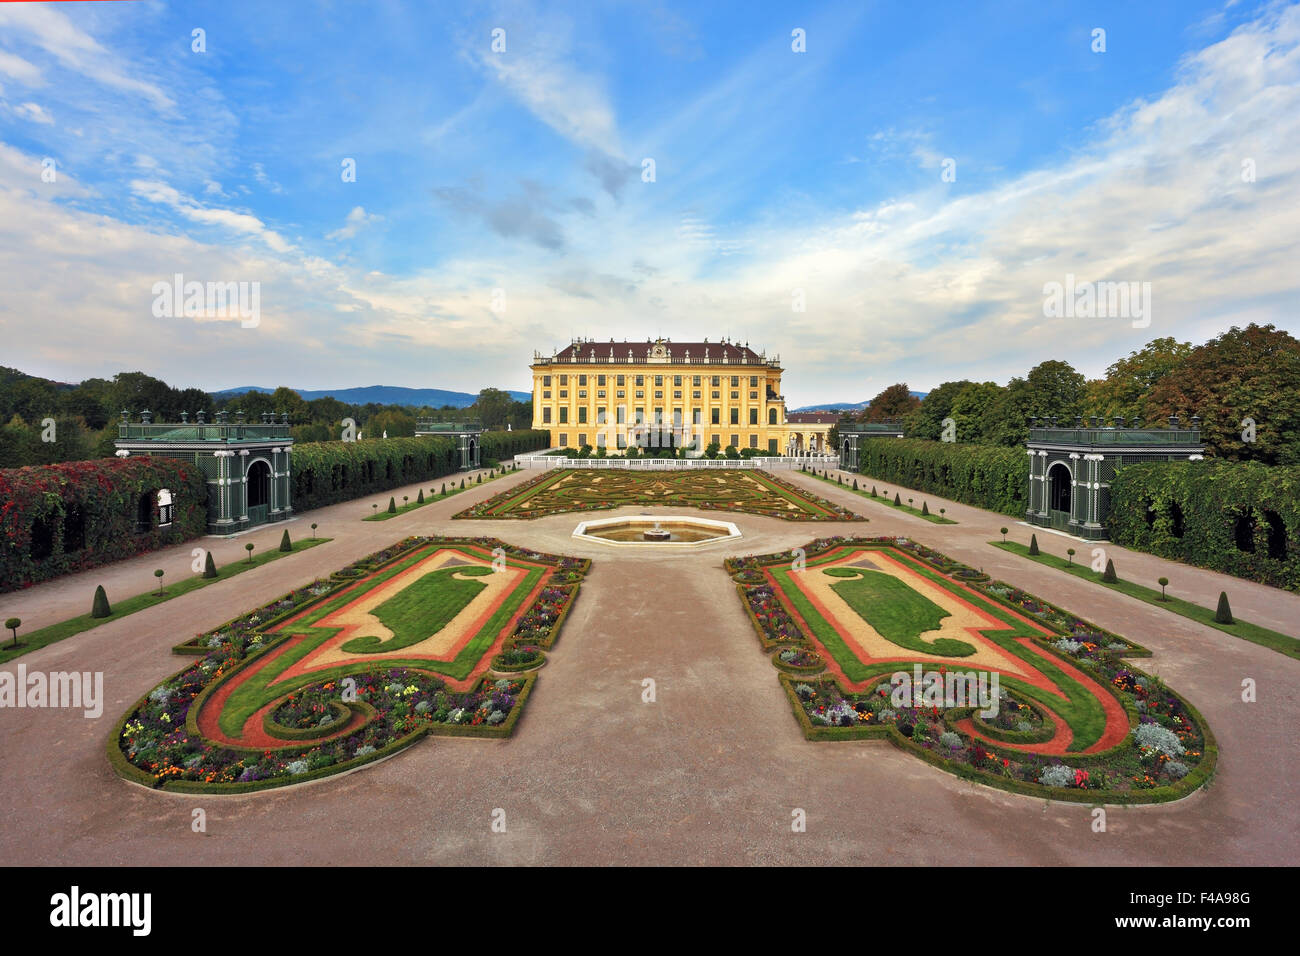 La residencia de los Habsburgo austríaco Foto de stock